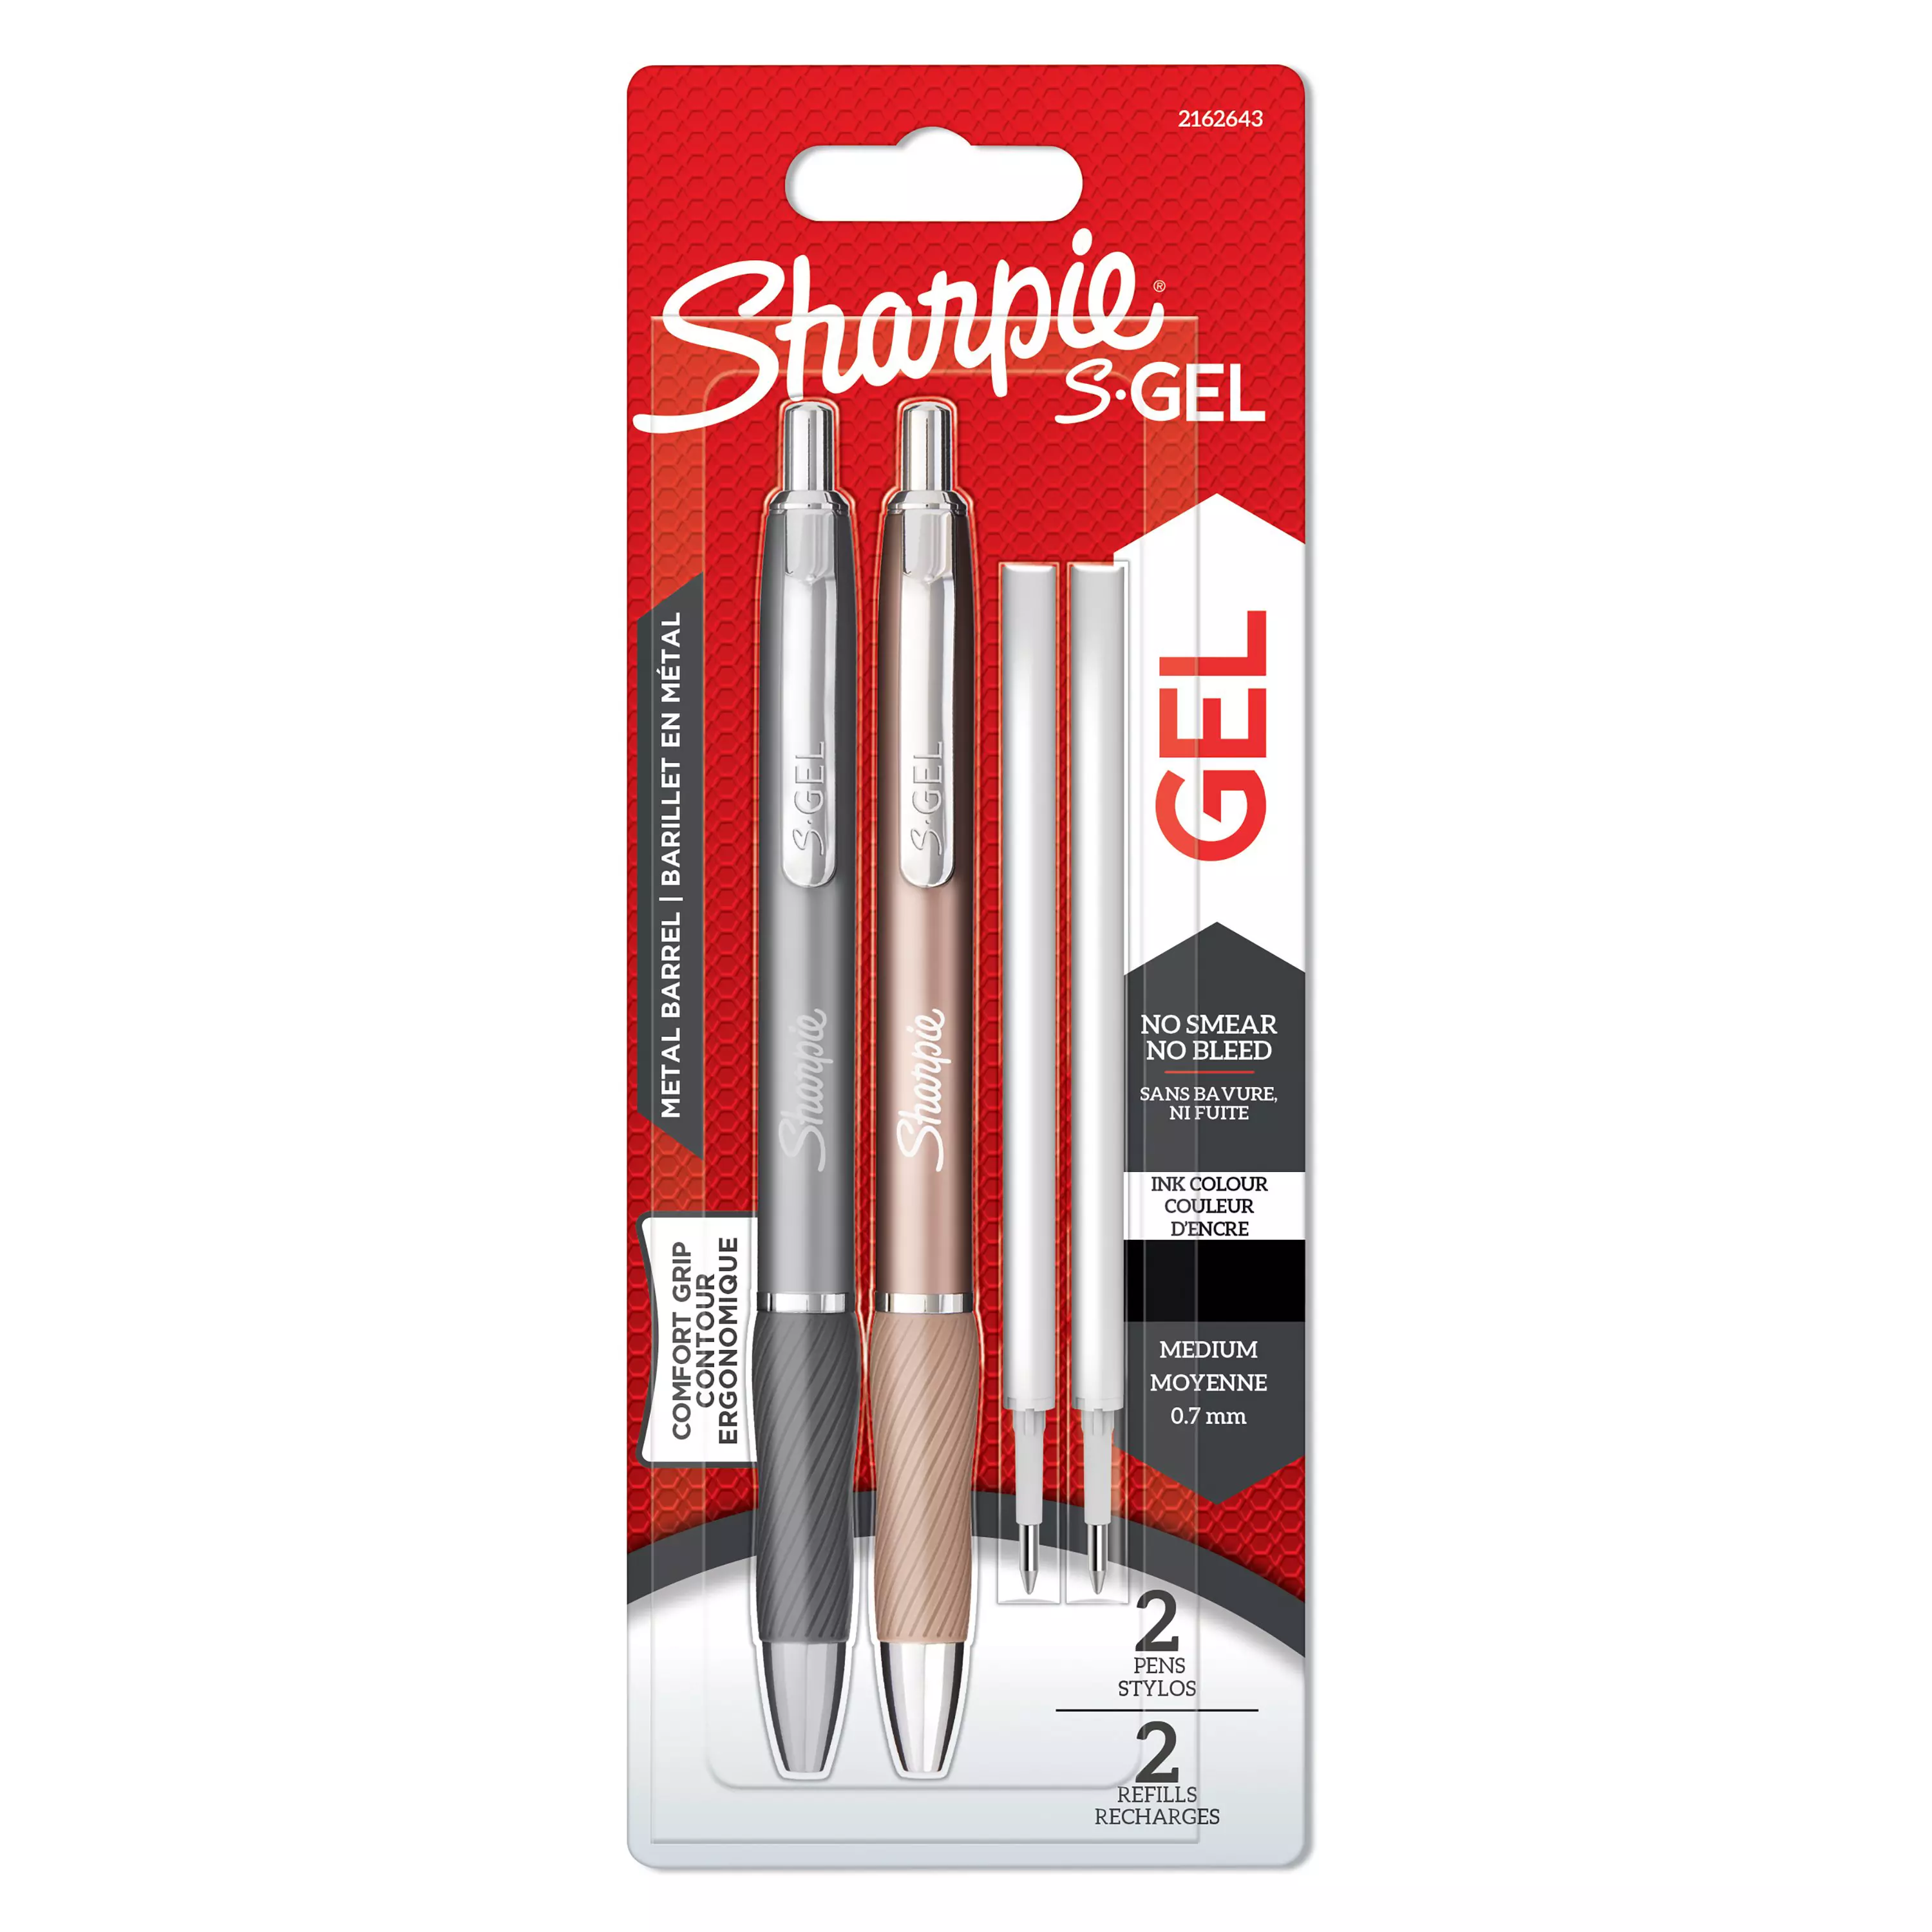 Sharpie S-Gel Metal Gel Pens Medium